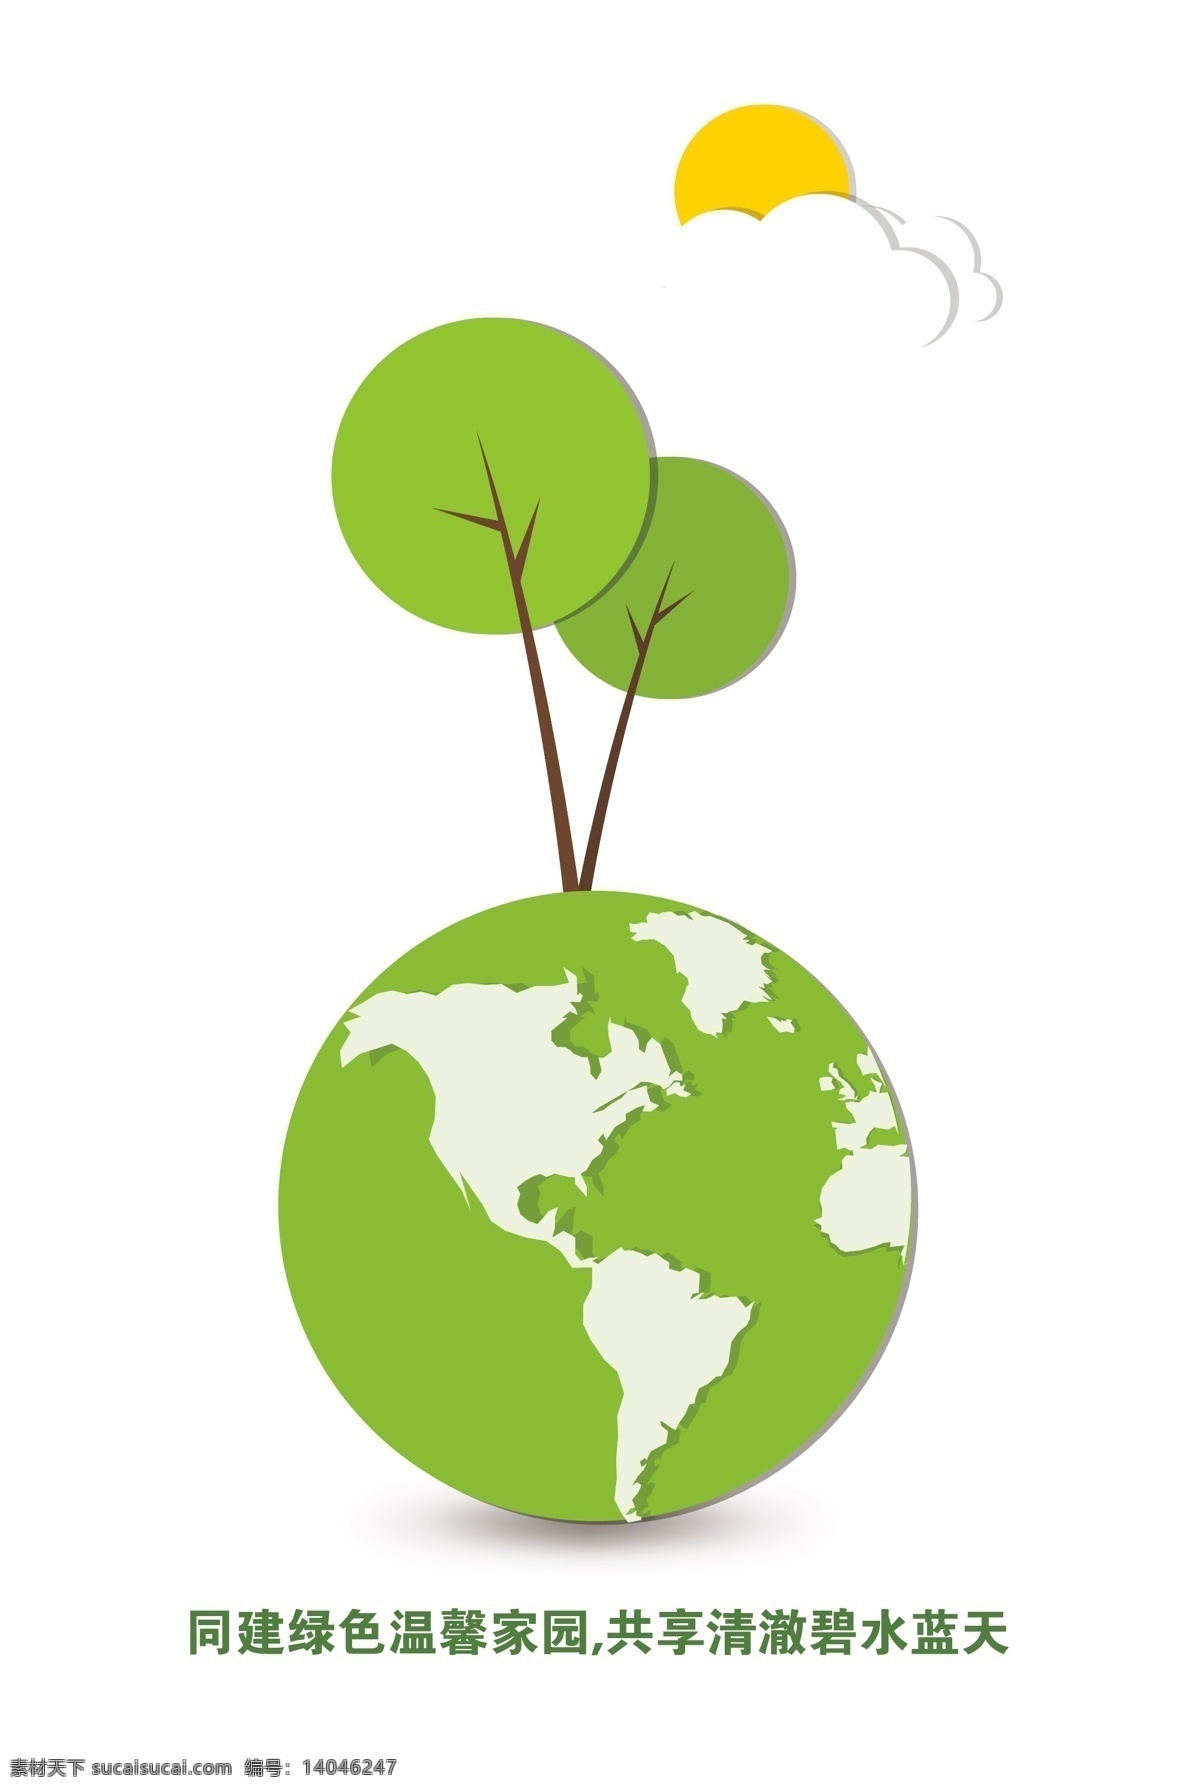 保护 地球 q版 保护地球 保护环境 卡通地球 卡通太阳 卡通图案 宣传单 招贴设计 海报 其他海报设计